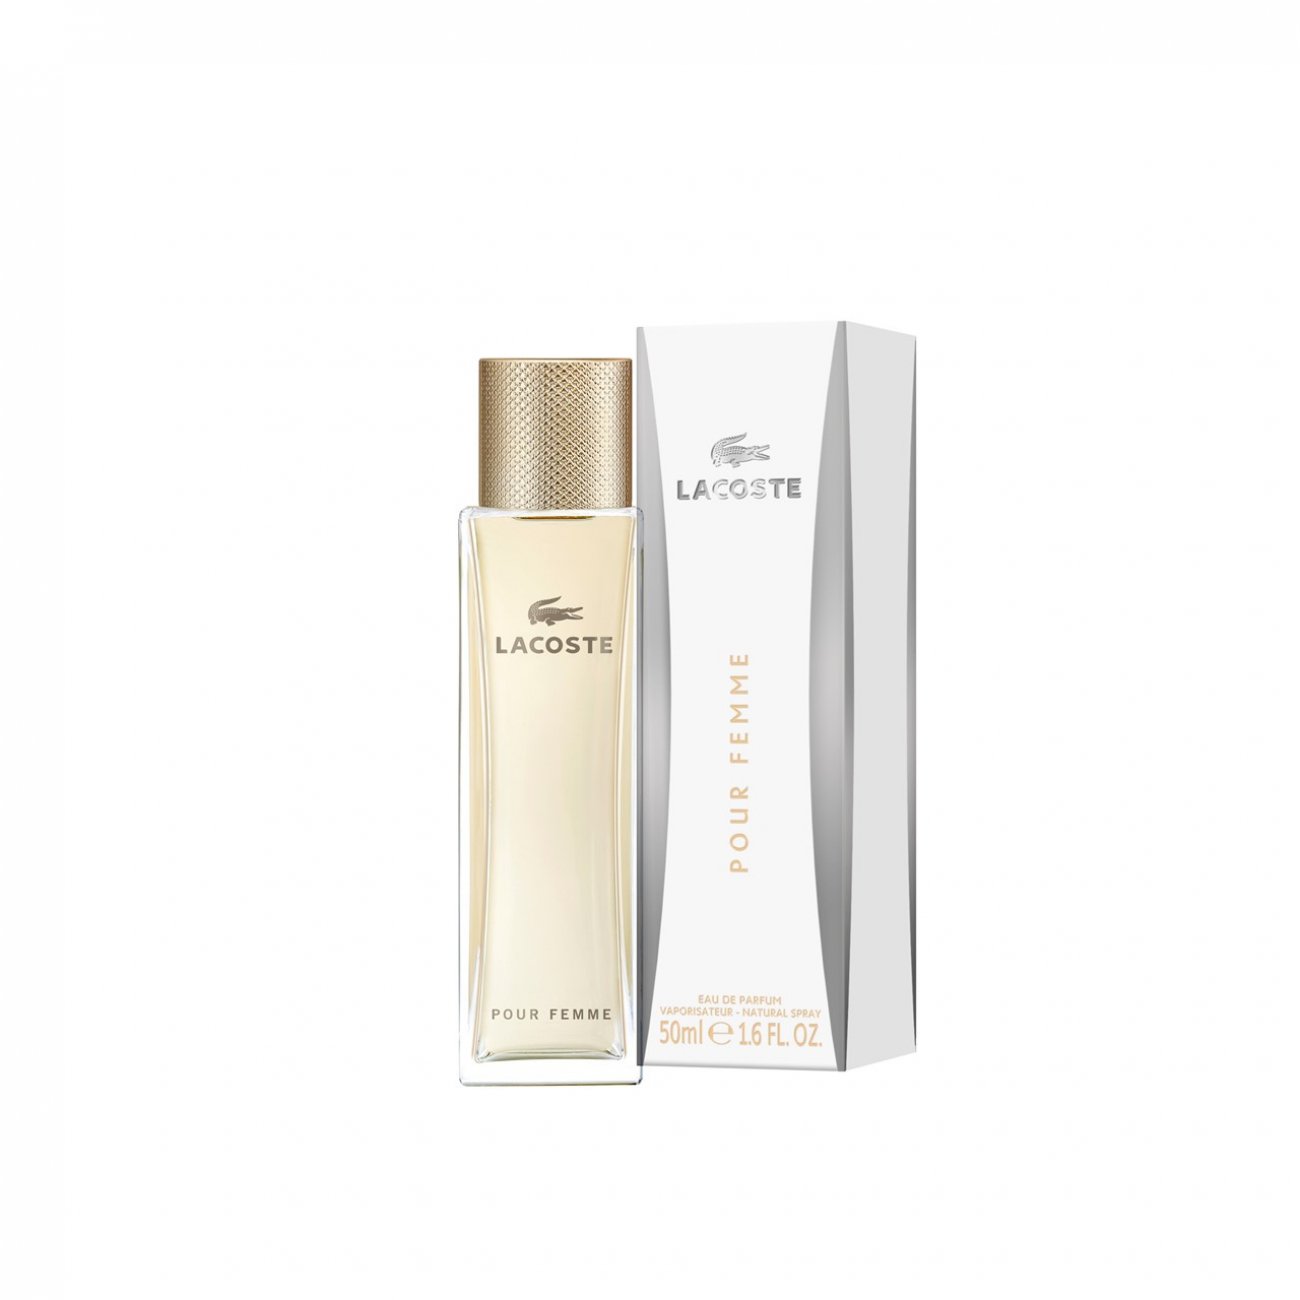 Buy Lacoste Femme de Parfum (1.0fl oz) · USA